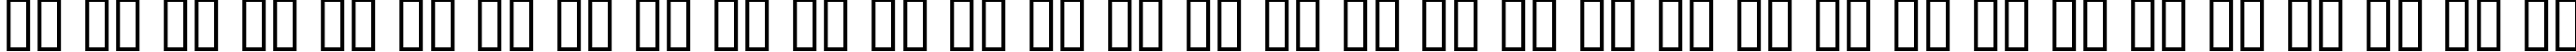 Пример написания русского алфавита шрифтом AgitProp Medium